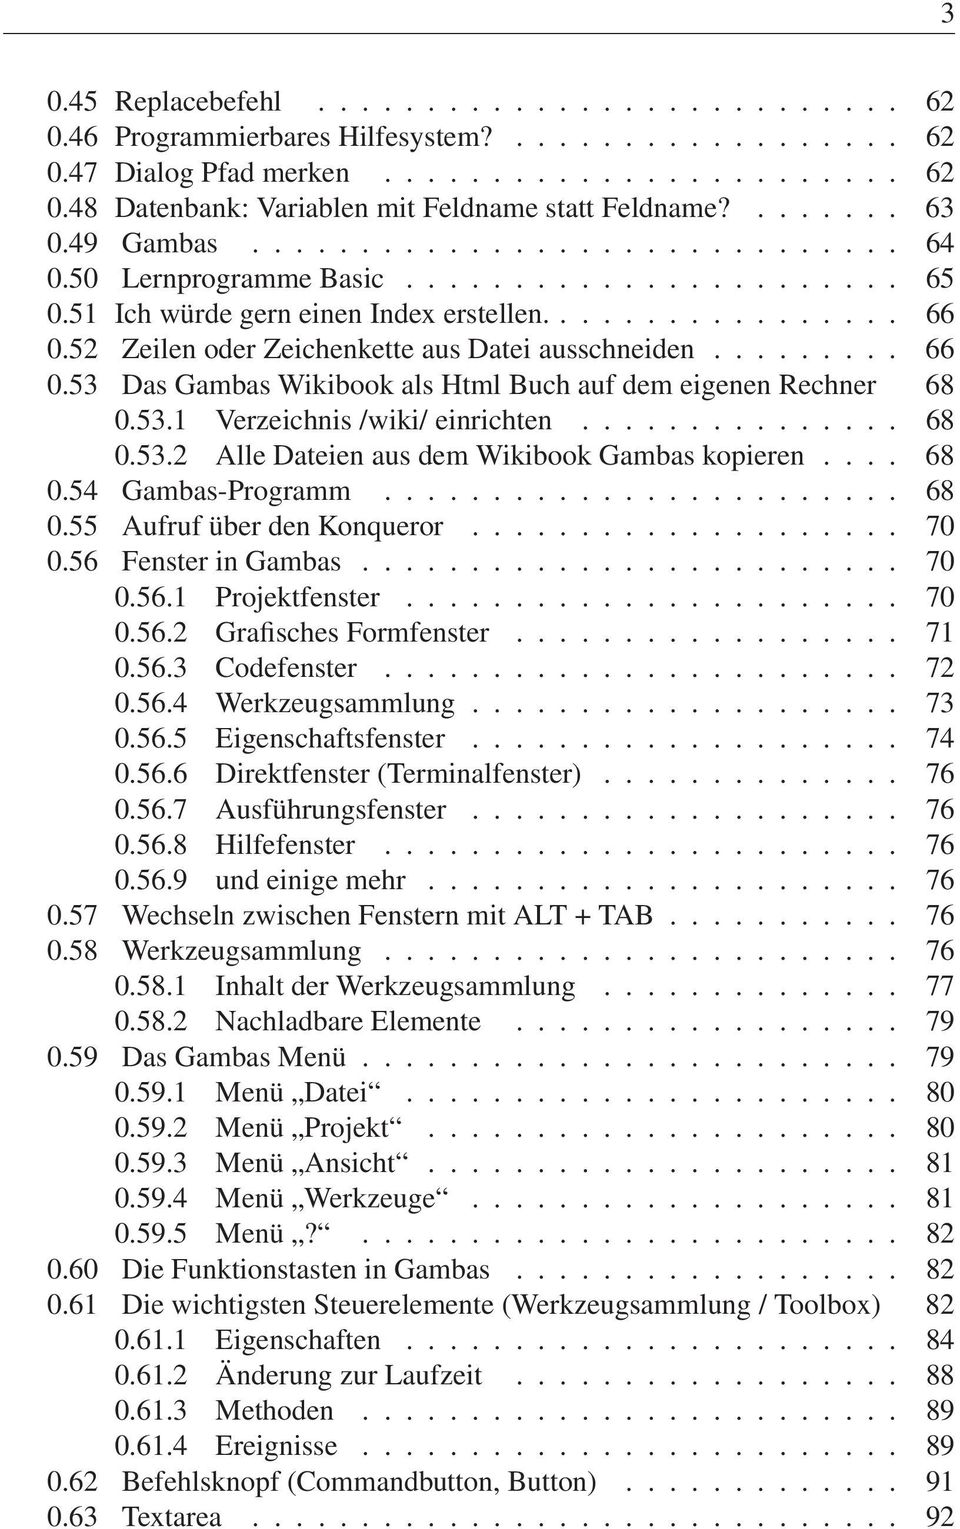 52 Zeilen oder Zeichenkette aus Datei ausschneiden......... 66 0.53 Das Gambas Wikibook als Html Buch auf dem eigenen Rechner 68 0.53.1 Verzeichnis /wiki/ einrichten............... 68 0.53.2 Alle Dateien aus dem Wikibook Gambas kopieren.